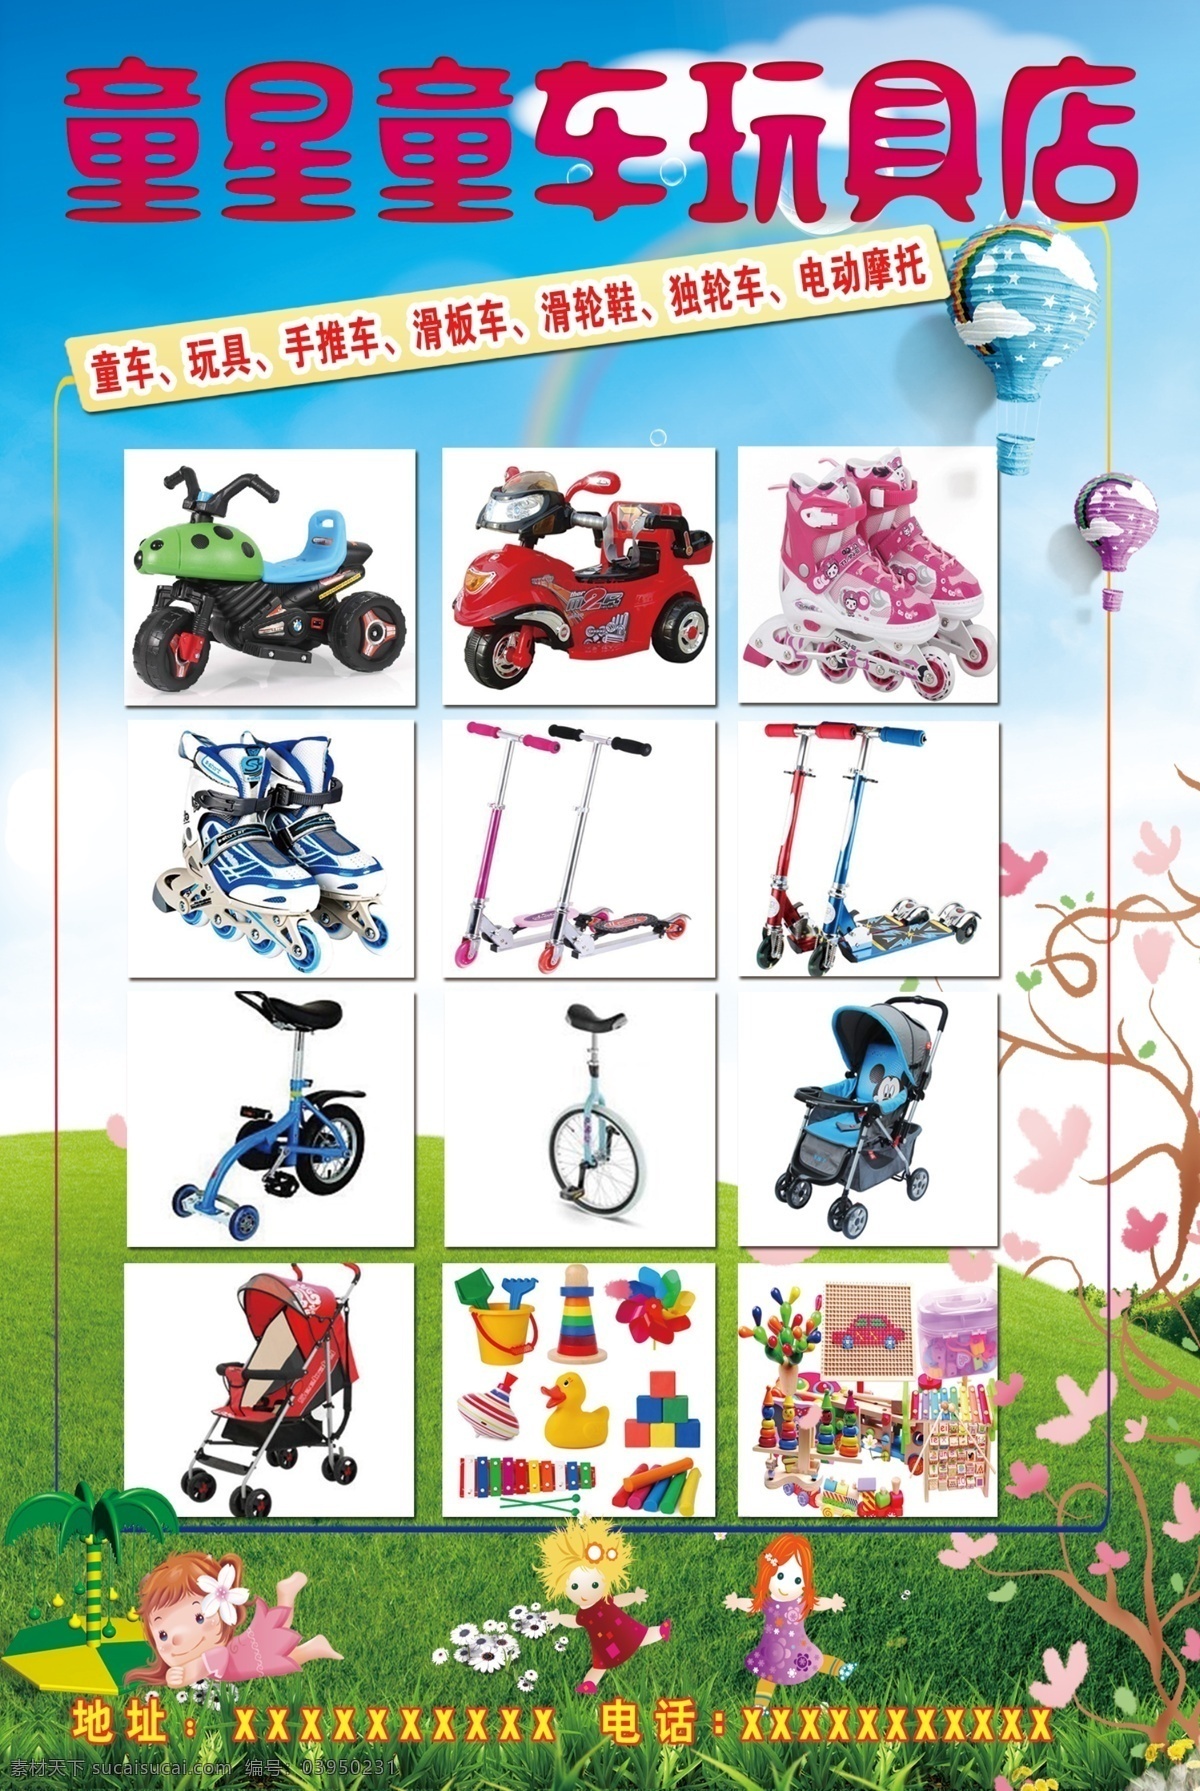 童星童车 儿童玩具 童车 滑板车 单轮车 儿童玩具海报 儿童海报 儿童推车 分层